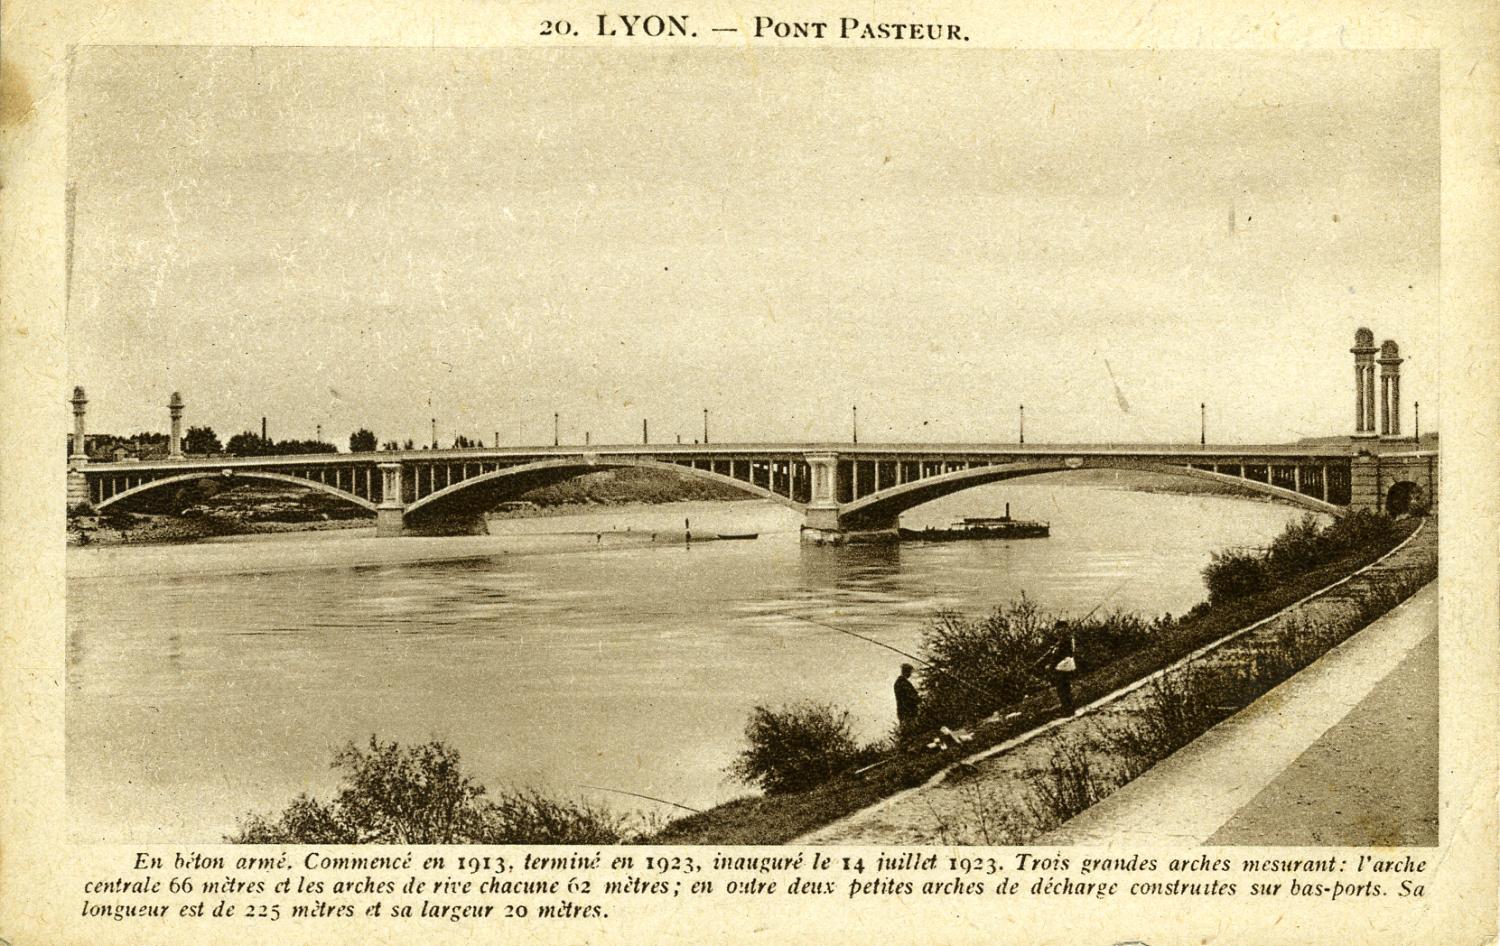 Lyon. - Pont Pasteur